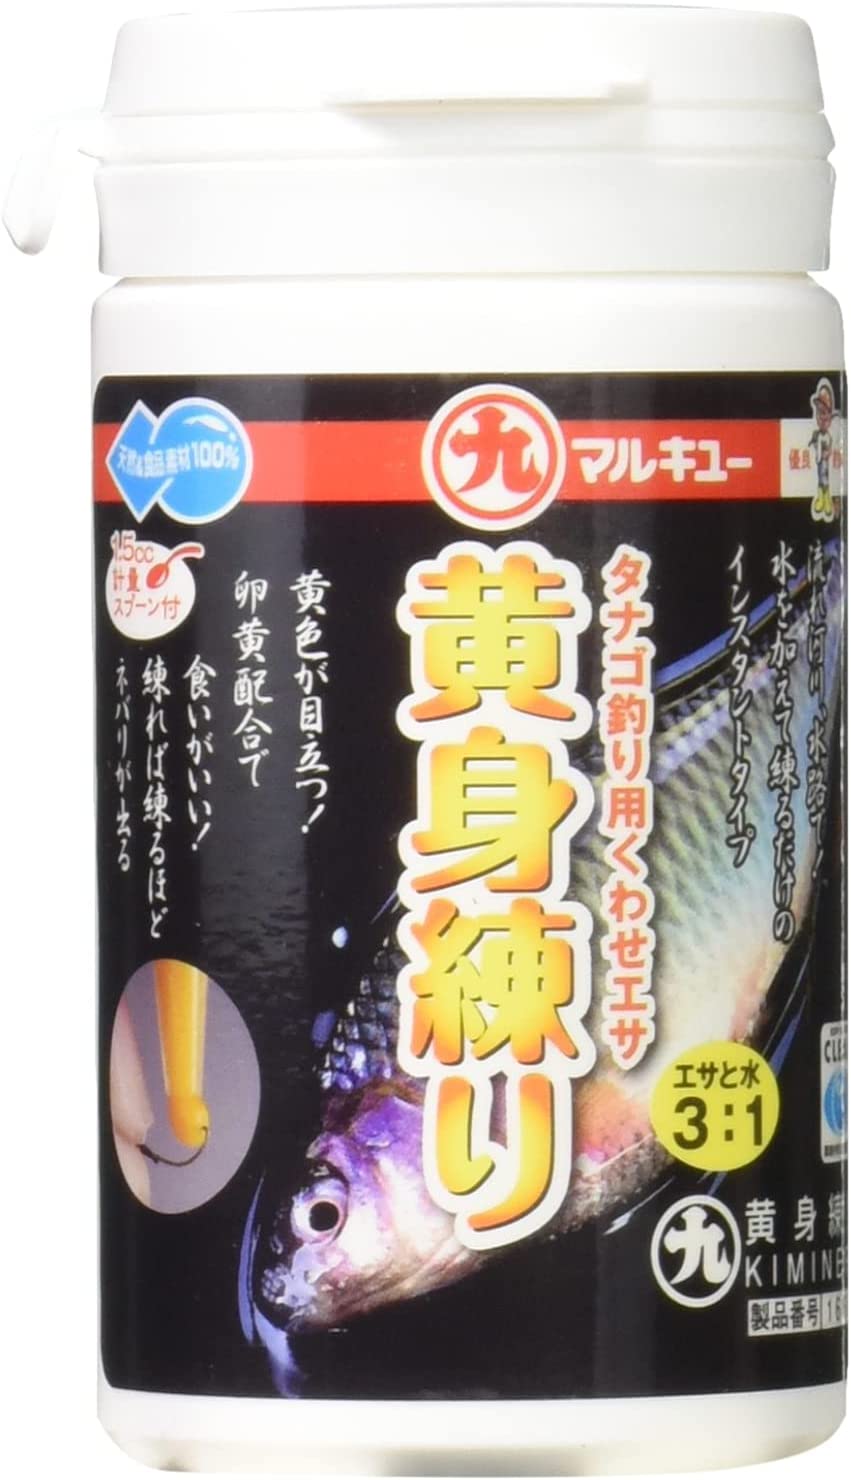 Marukyu Kimineri Microfishing Bait